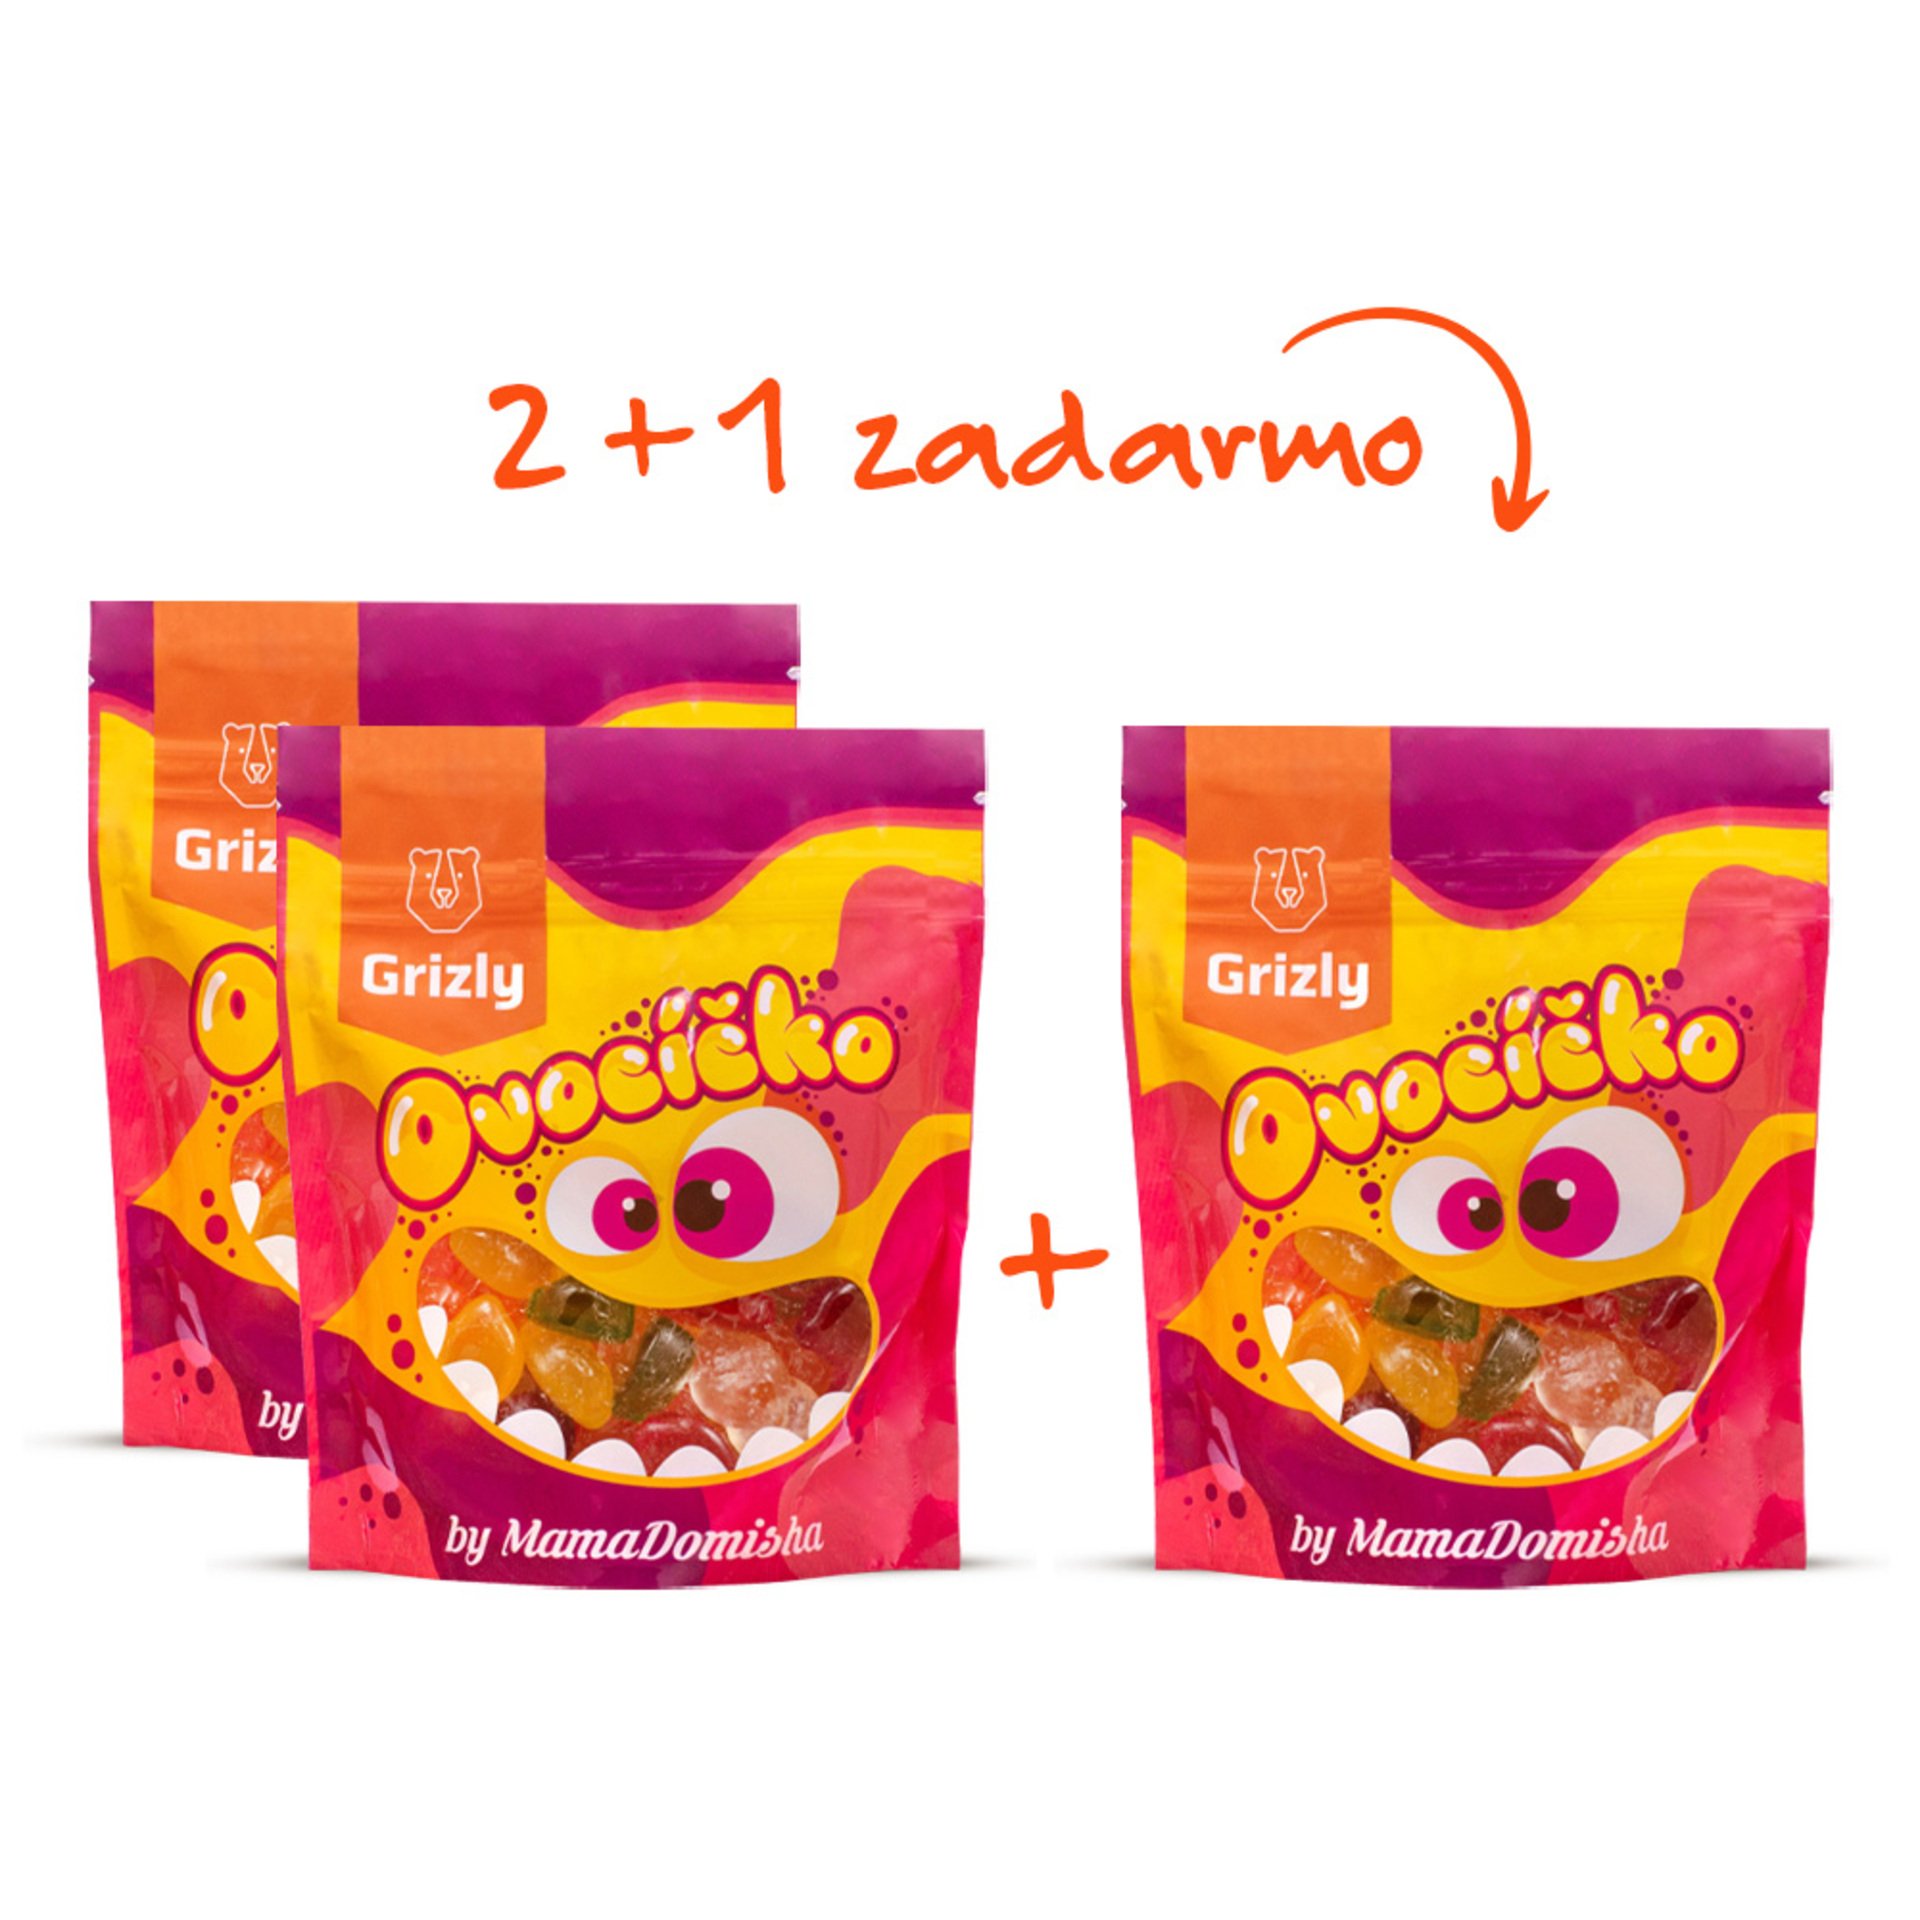 E-shop GRIZLY Ovocíčko želé cukríky so stévií by @mamadomisha 200 g 2+1 zdarma